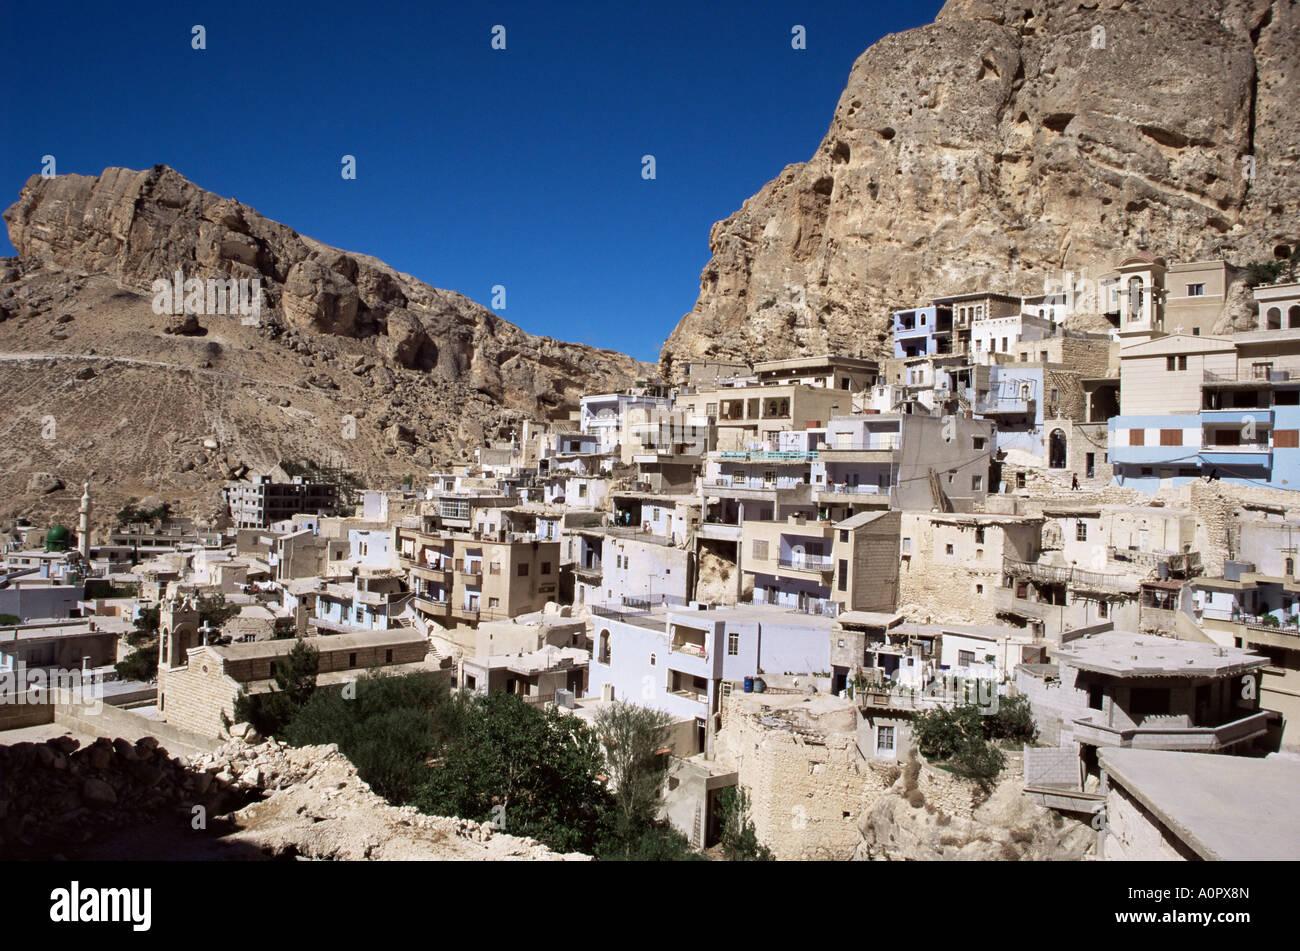 Village chrétien de Maloula sous falaises calcaires Syrie Moyen Orient Banque D'Images